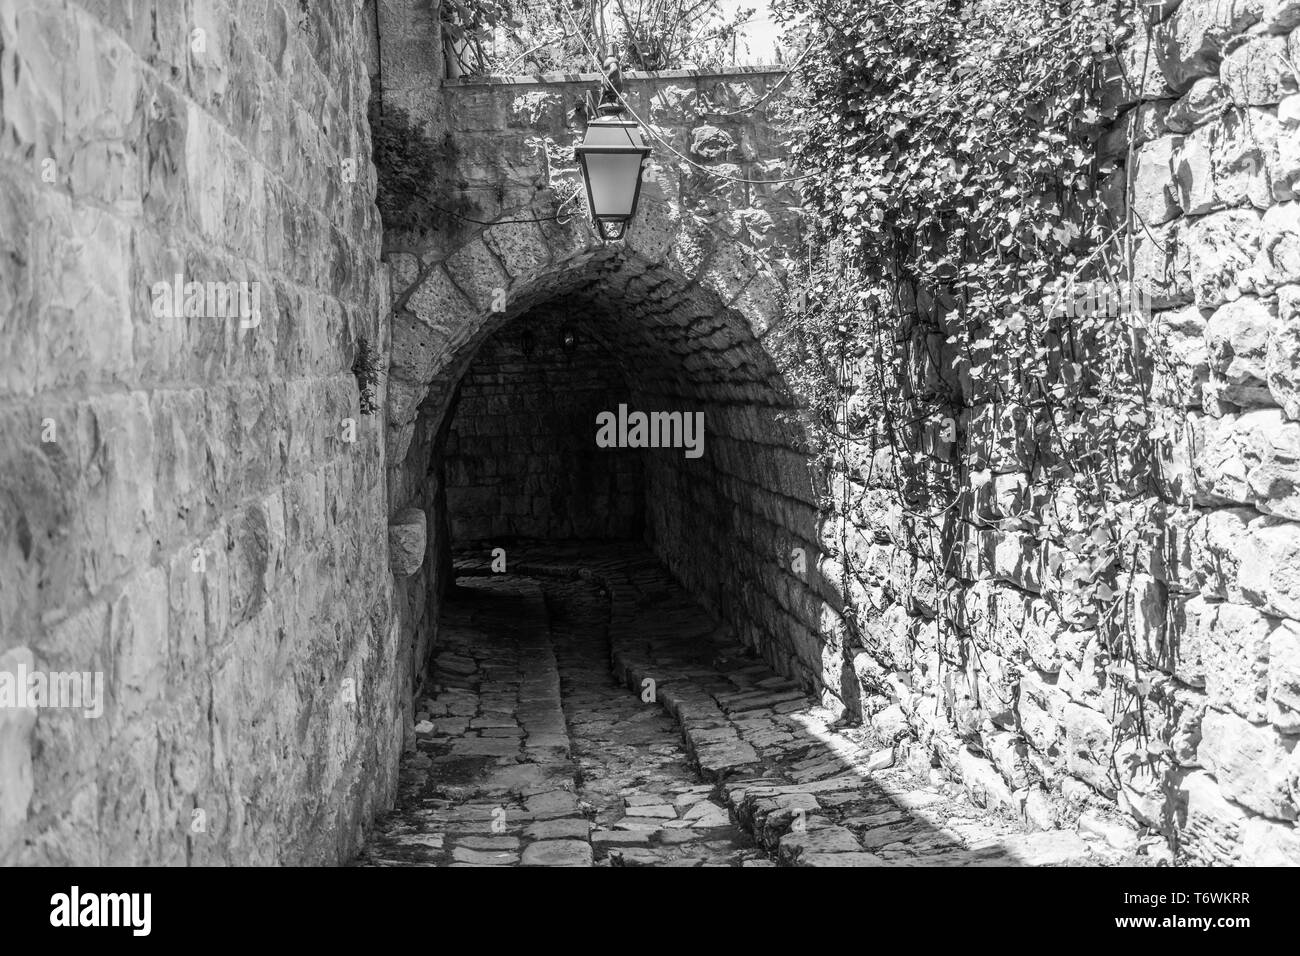 Questa è una cattura delle vecchie strade in Der el Kamar un villaggio situato in Libano e che potete vedere nella foto la vecchia a piedi fatta di pietre con un suo Foto Stock